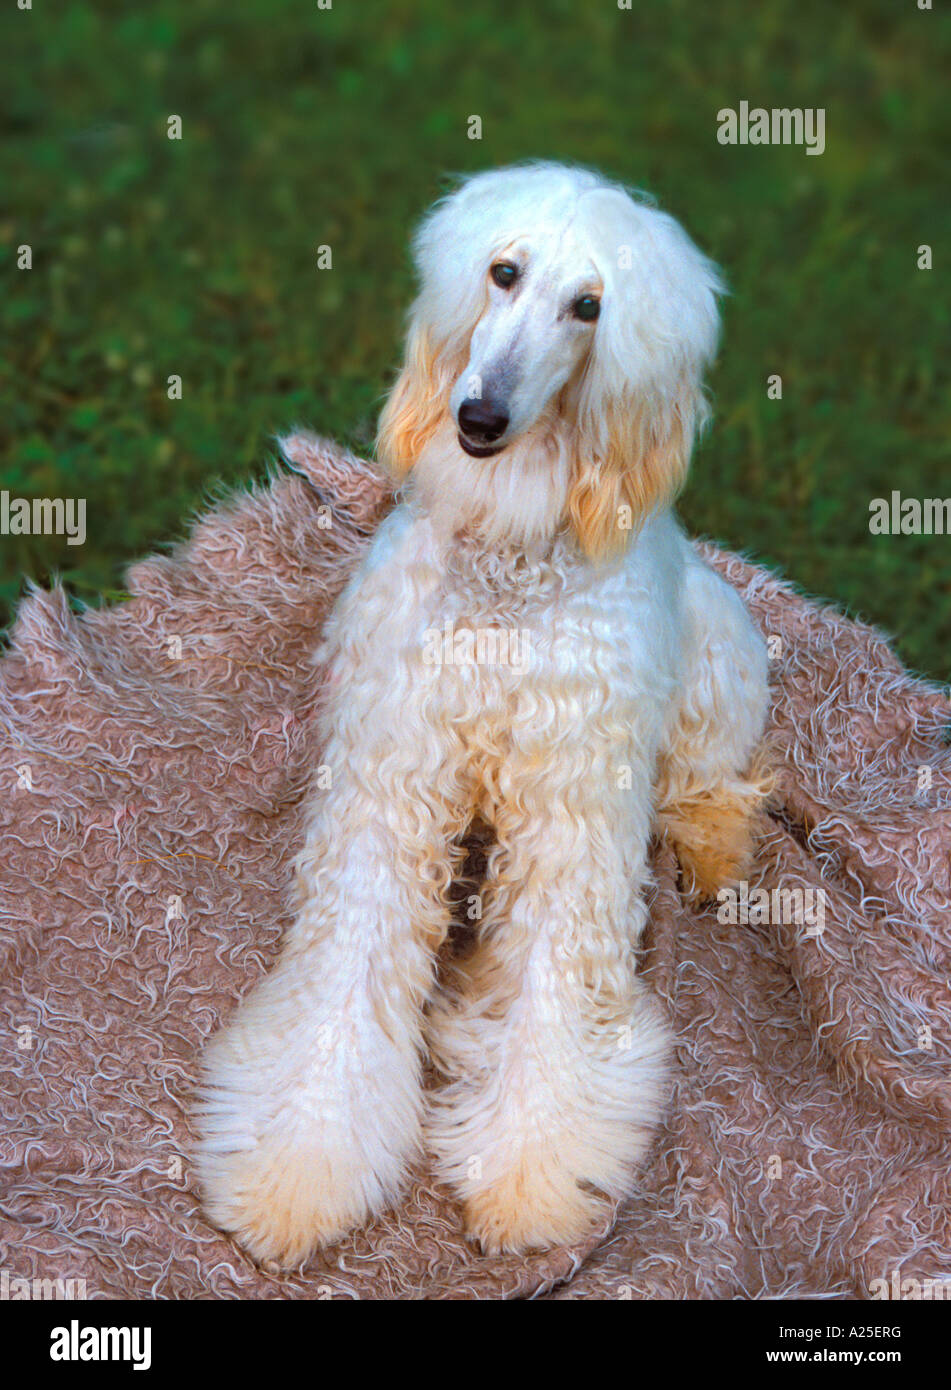 Afghanischer Windhund-Hund liegend auf Decke Stockfotografie - Alamy